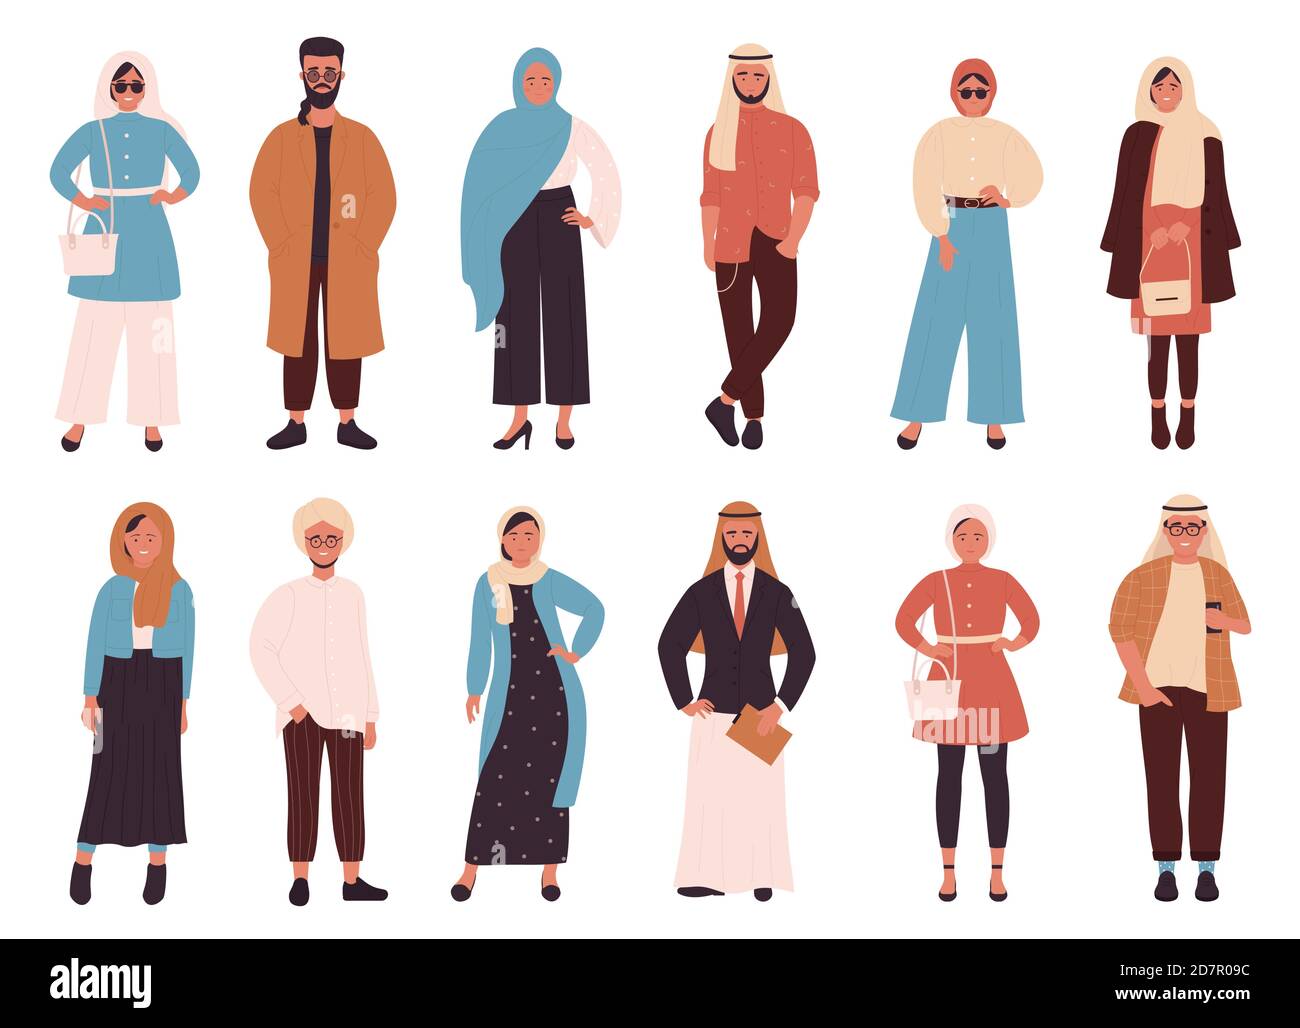 Mujer Musulmana Que Presenta Ropa Moda Para Personas Islámicas Personaje  Vector de stock por ©Sonulkaster 388988640